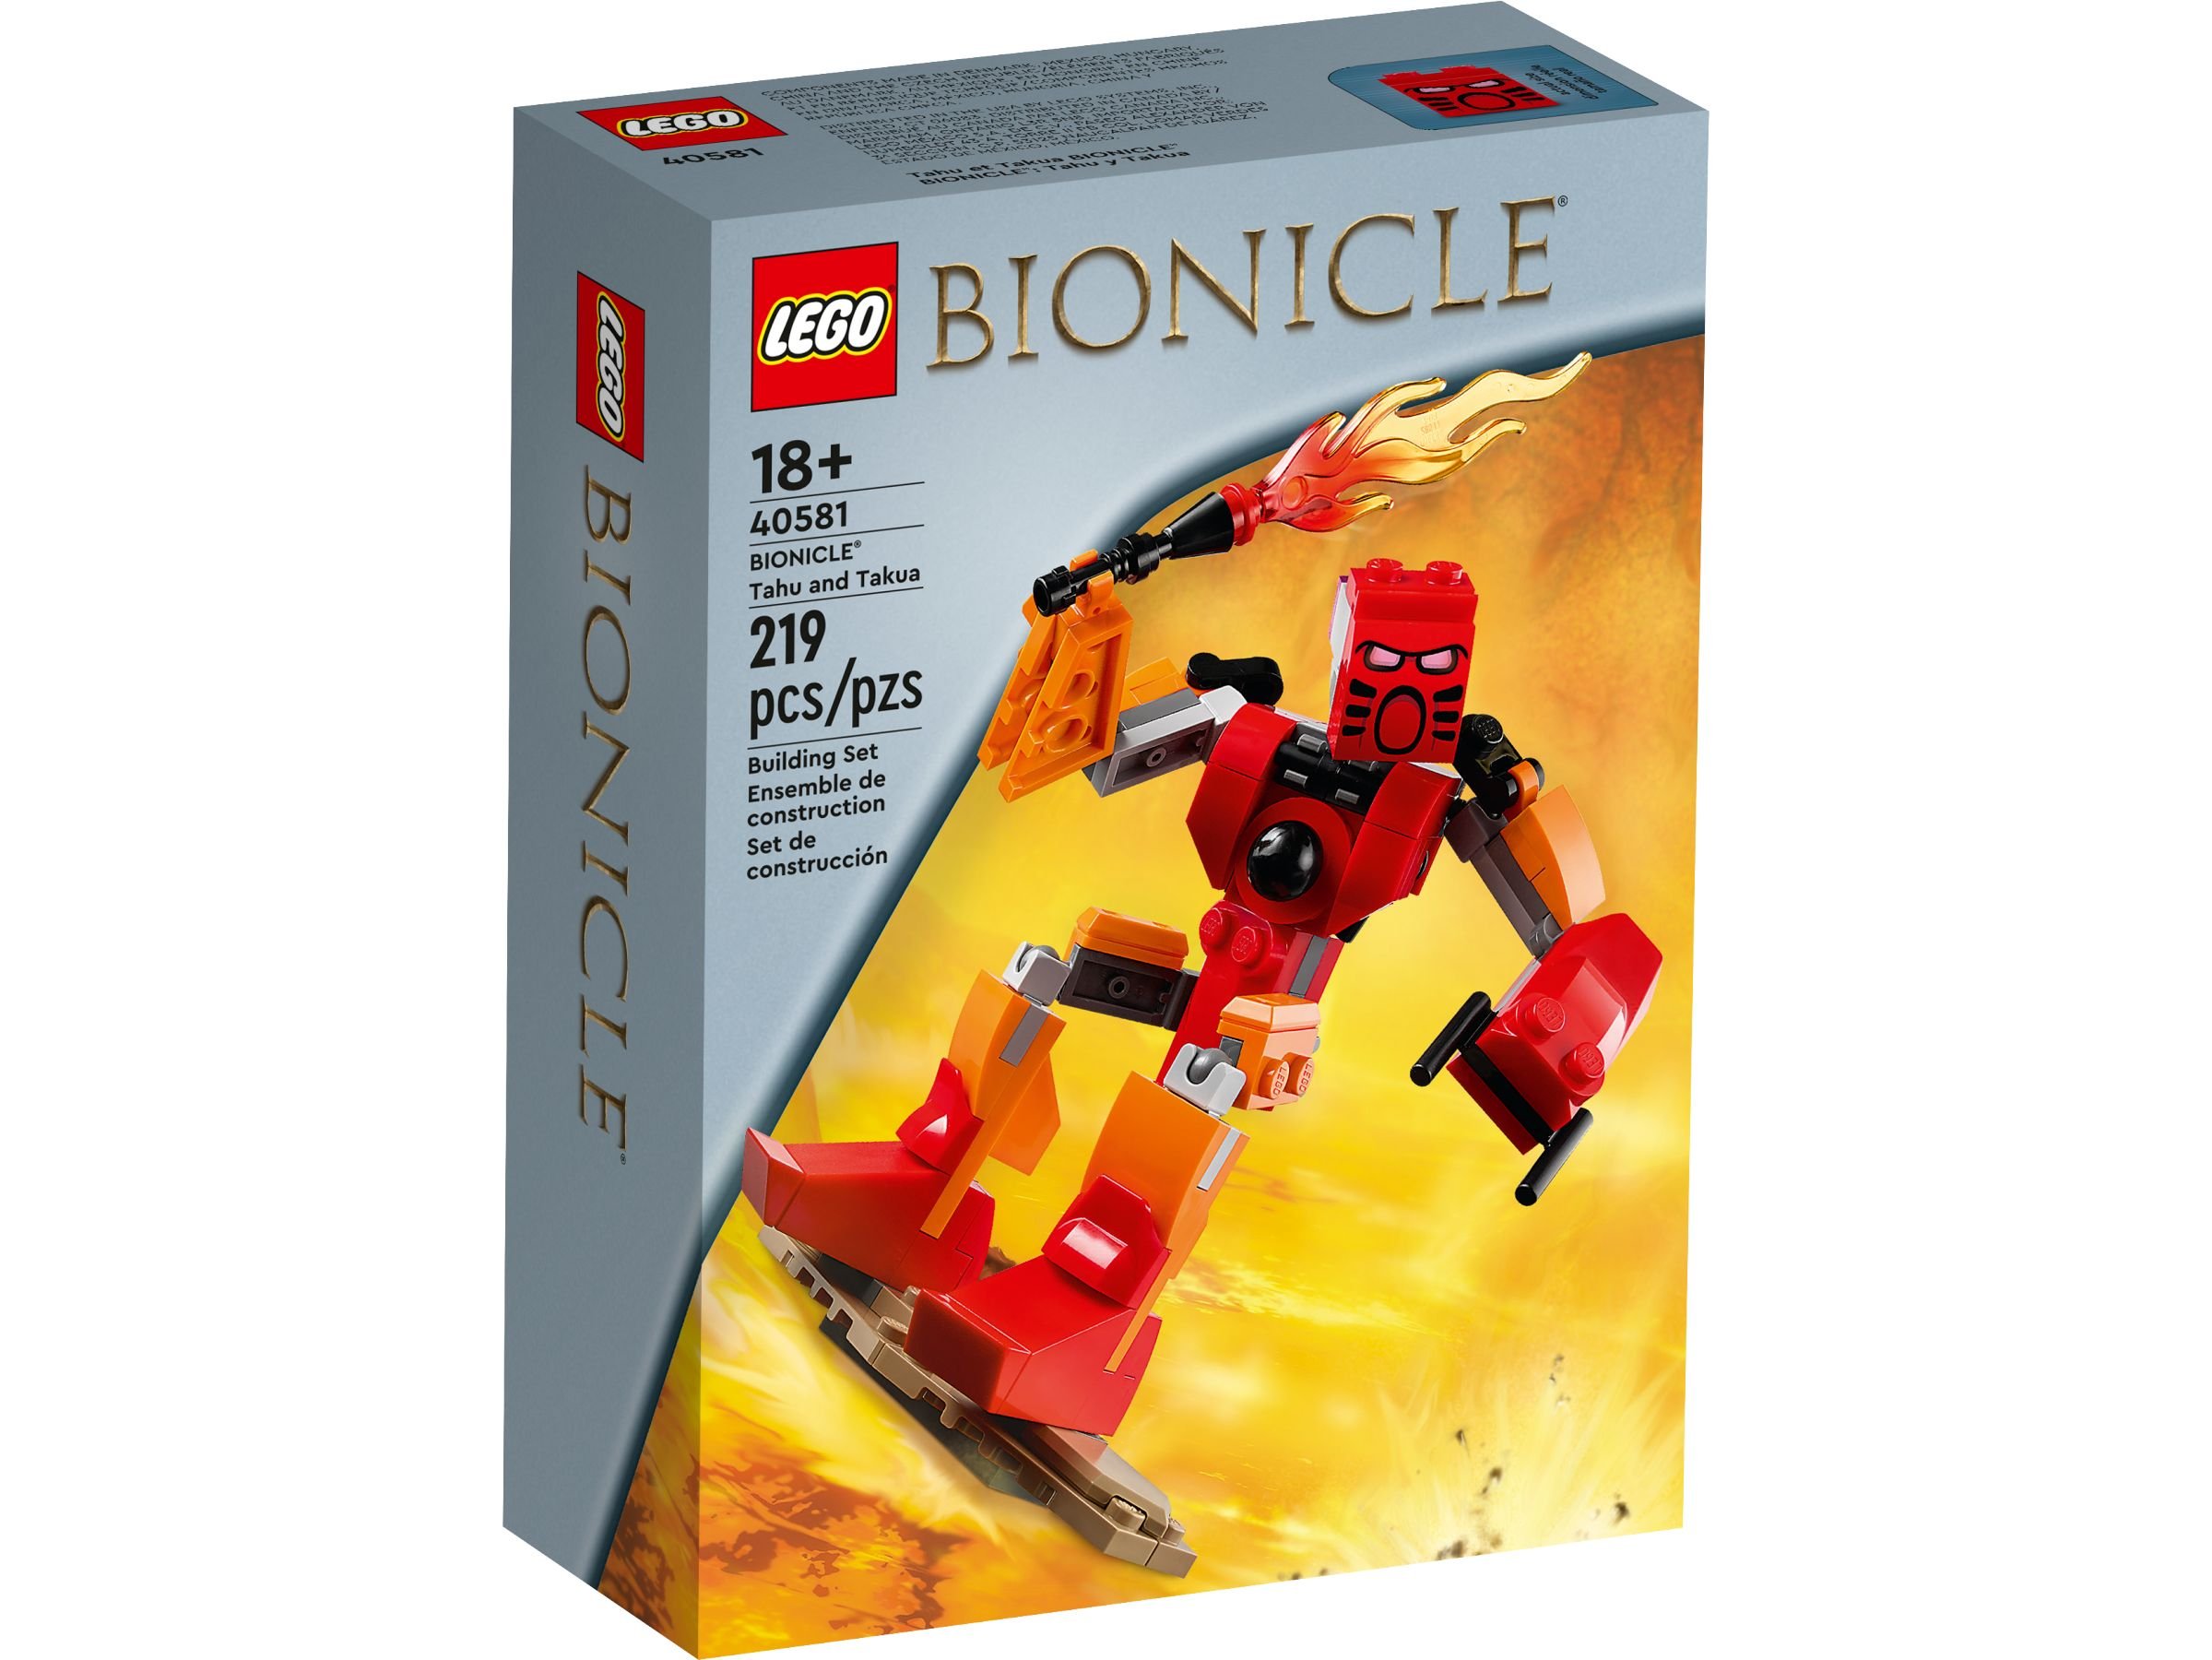 LEGO Bionicle 40581 Bionicle Tahu & Takua GWP LEGO_40581_alt1.jpg